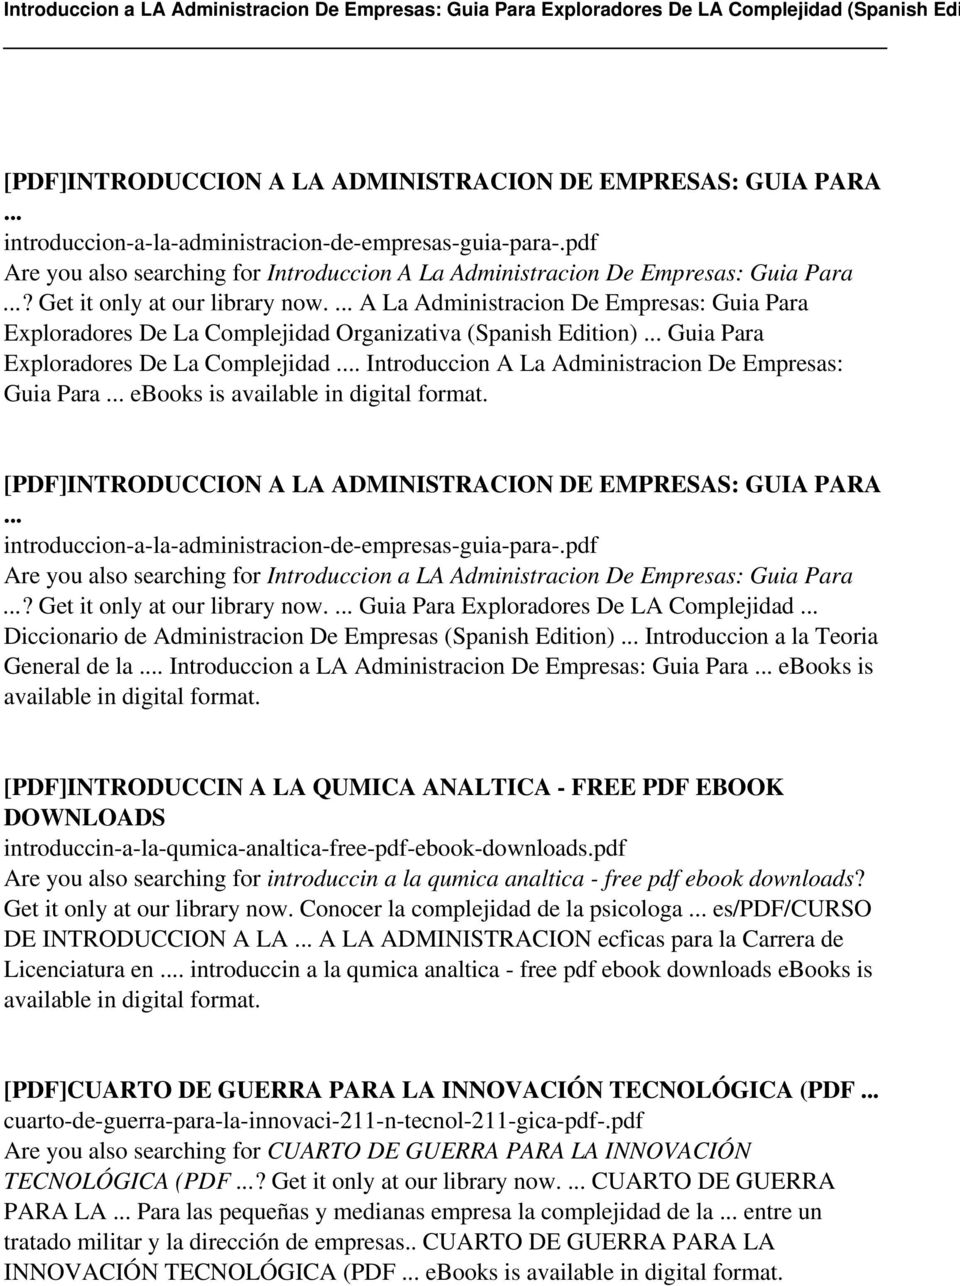 A La Administracion De Empresas: Guia Para Exploradores De La Complejidad Organizativa (Spanish Edition) Guia Para Exploradores De La Complejidad.